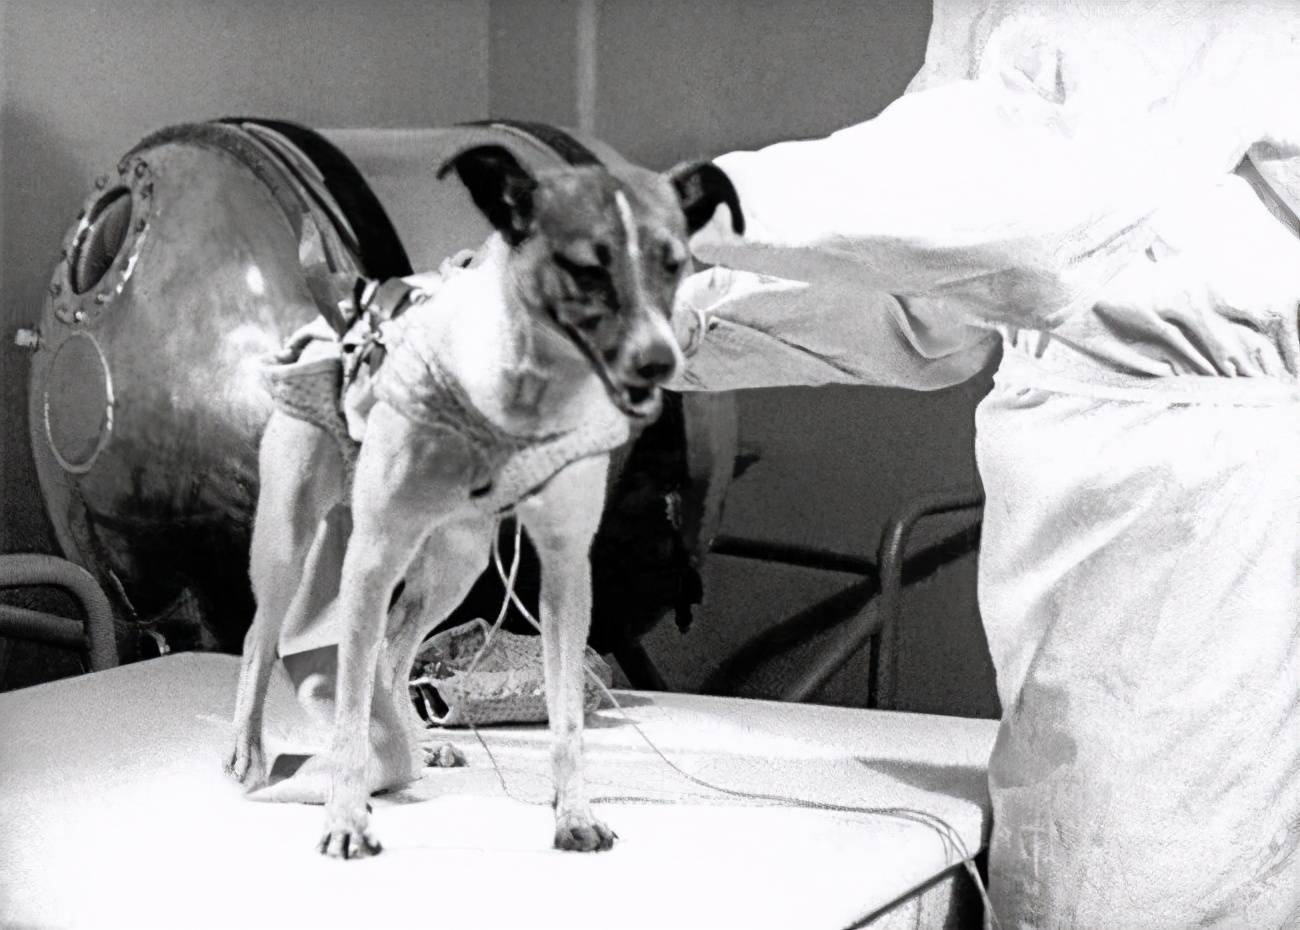 悲催的太空狗莱卡,在进入太空前就知回不来,死亡真相被隐瞒45年